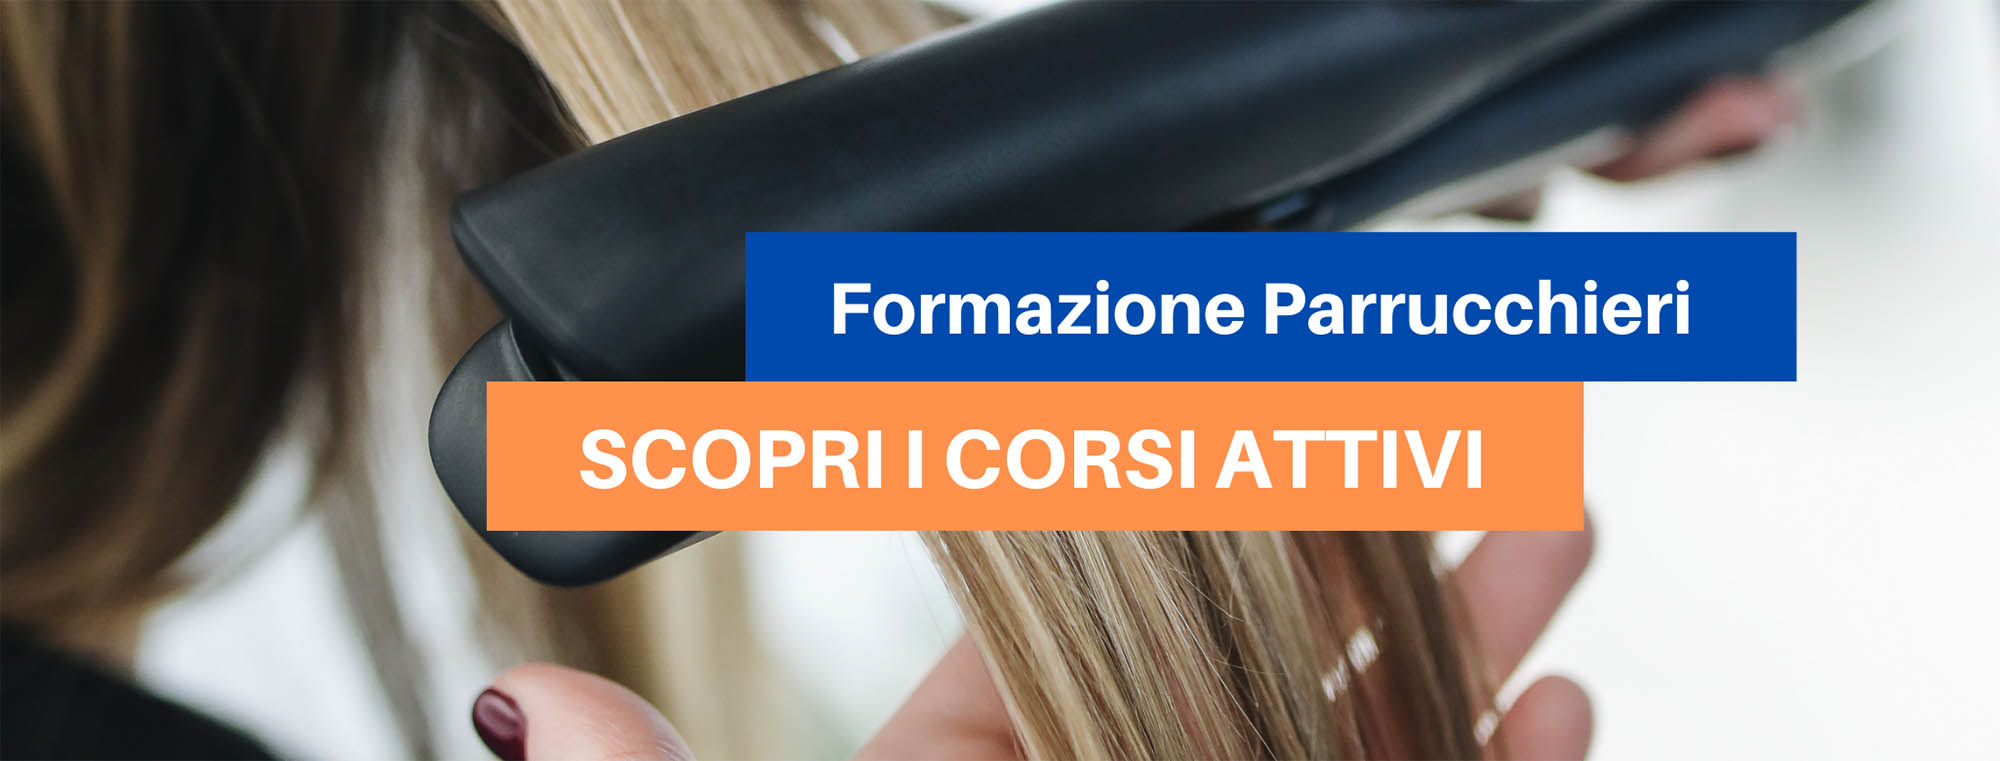 Corsi di formazione e aggiornamento per parrucchieri Ascoli Piceno